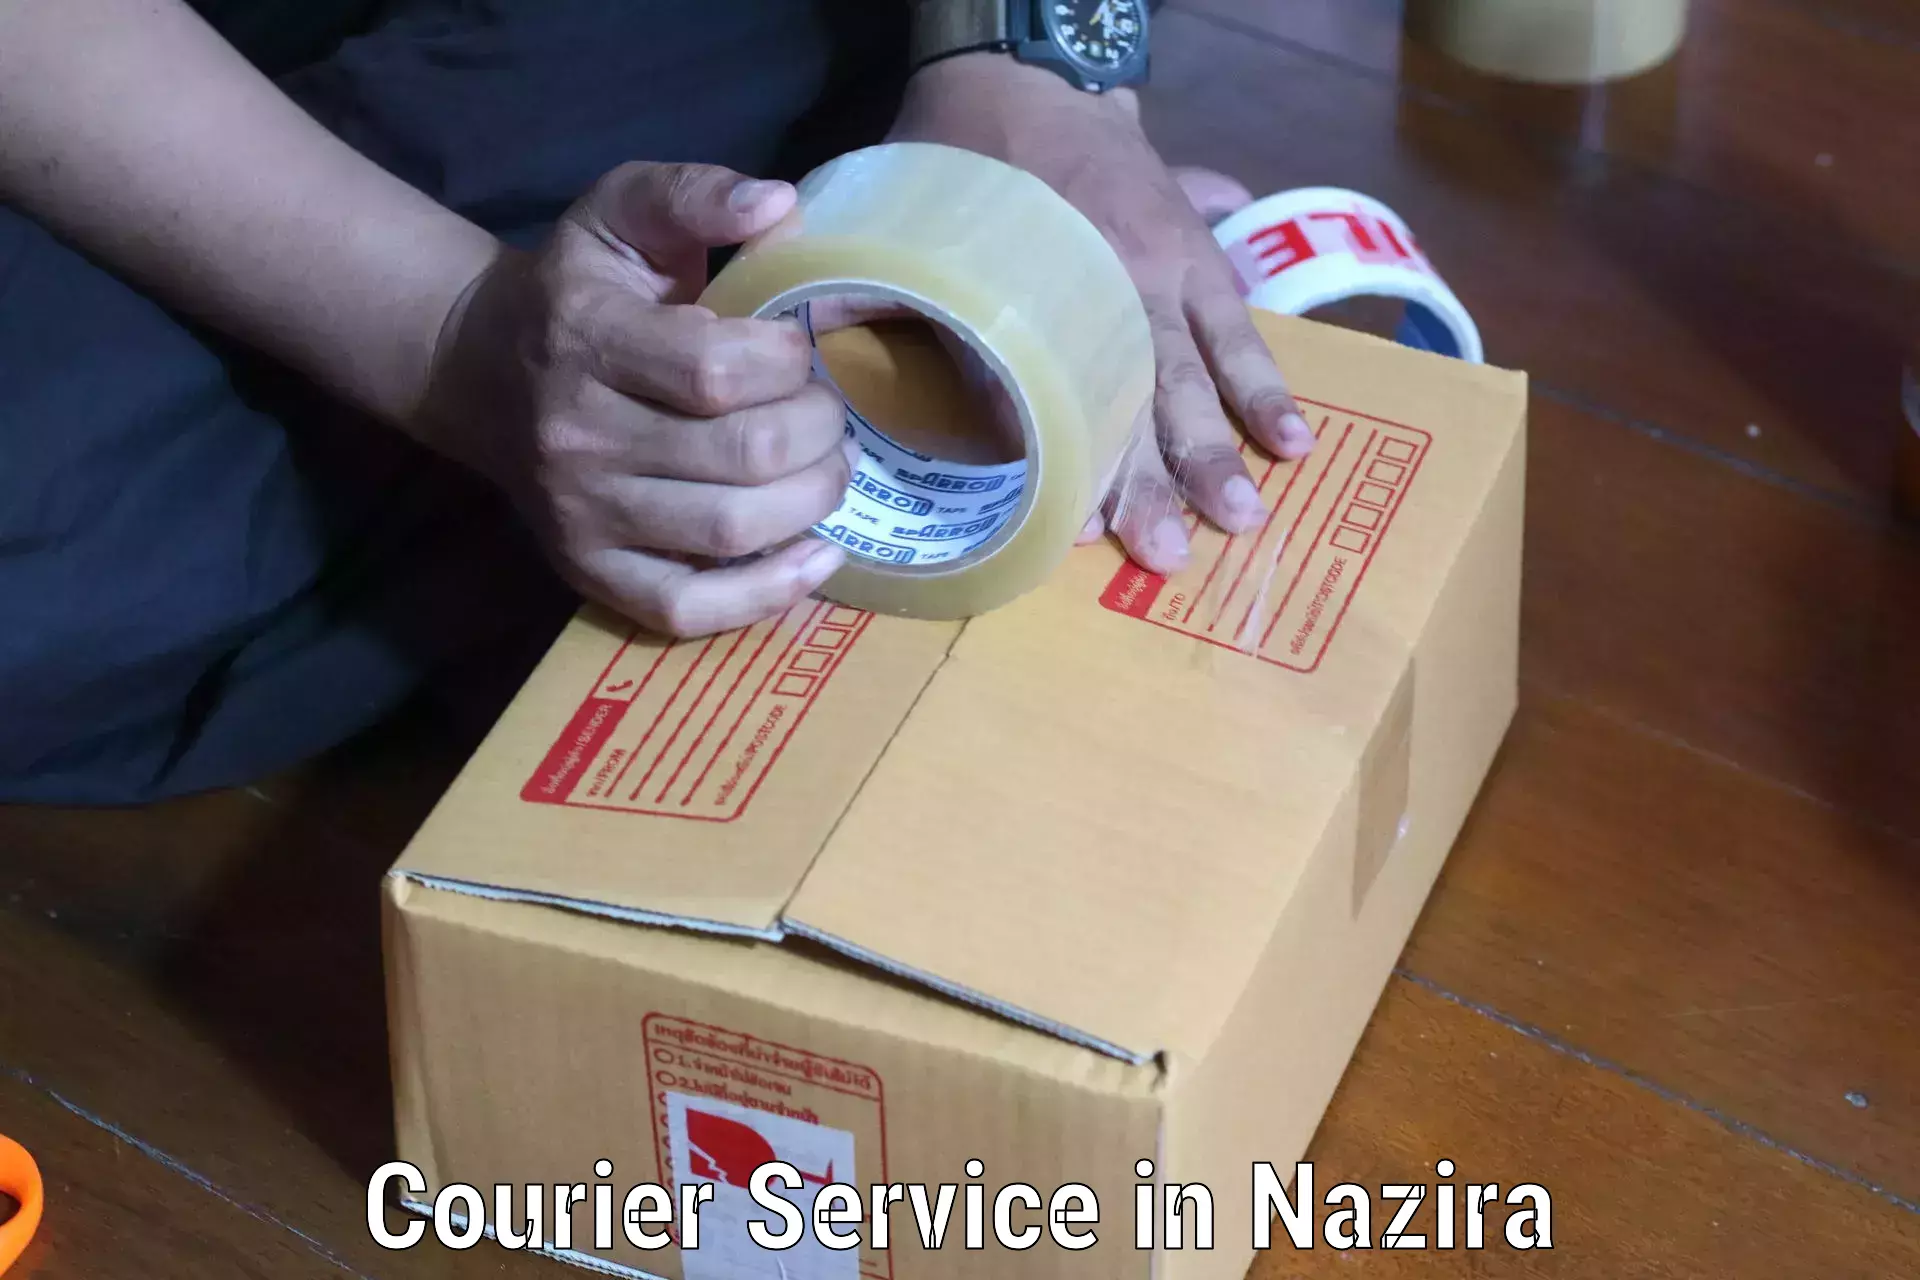 Doorstep delivery service in Nazira